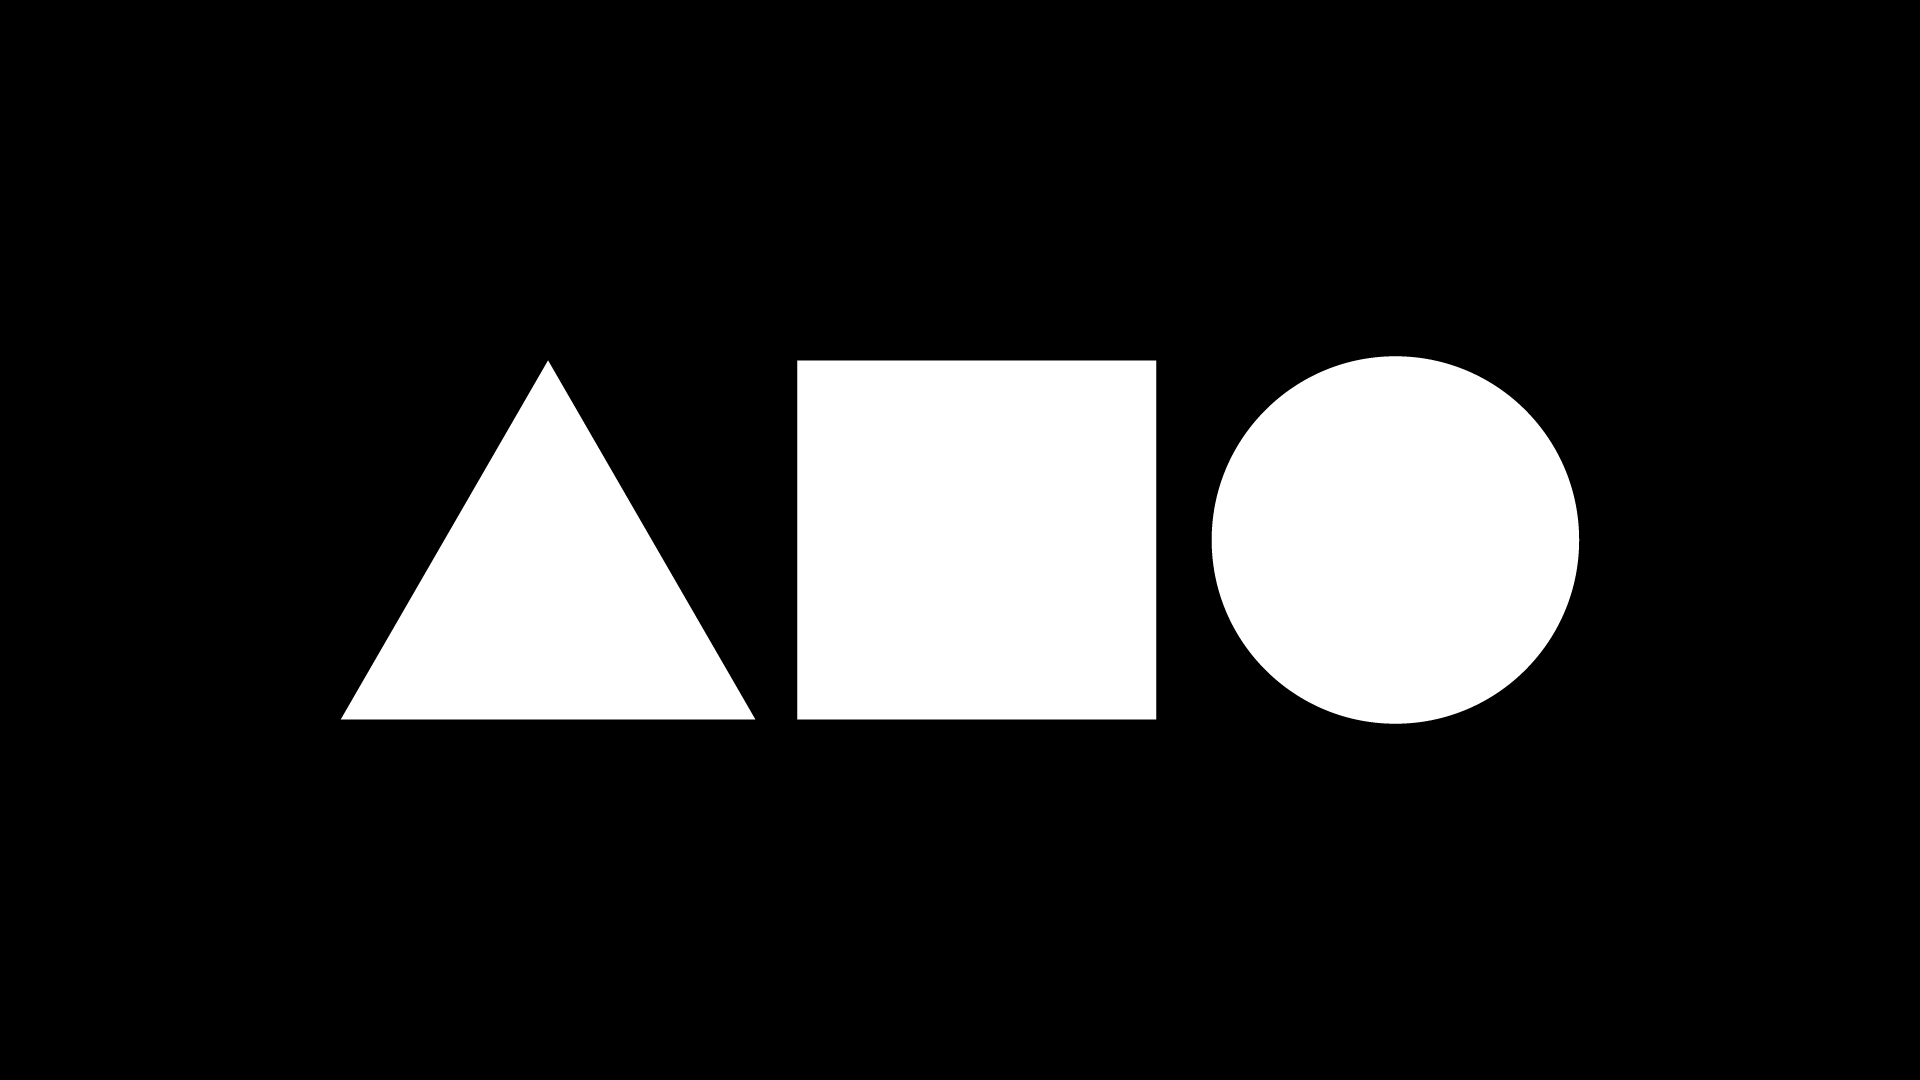 Ein simples weisses Logo auf schwarzem Hintergrund, dass aus einem Dreieck, einem Viereck und einem Kreis besteht.